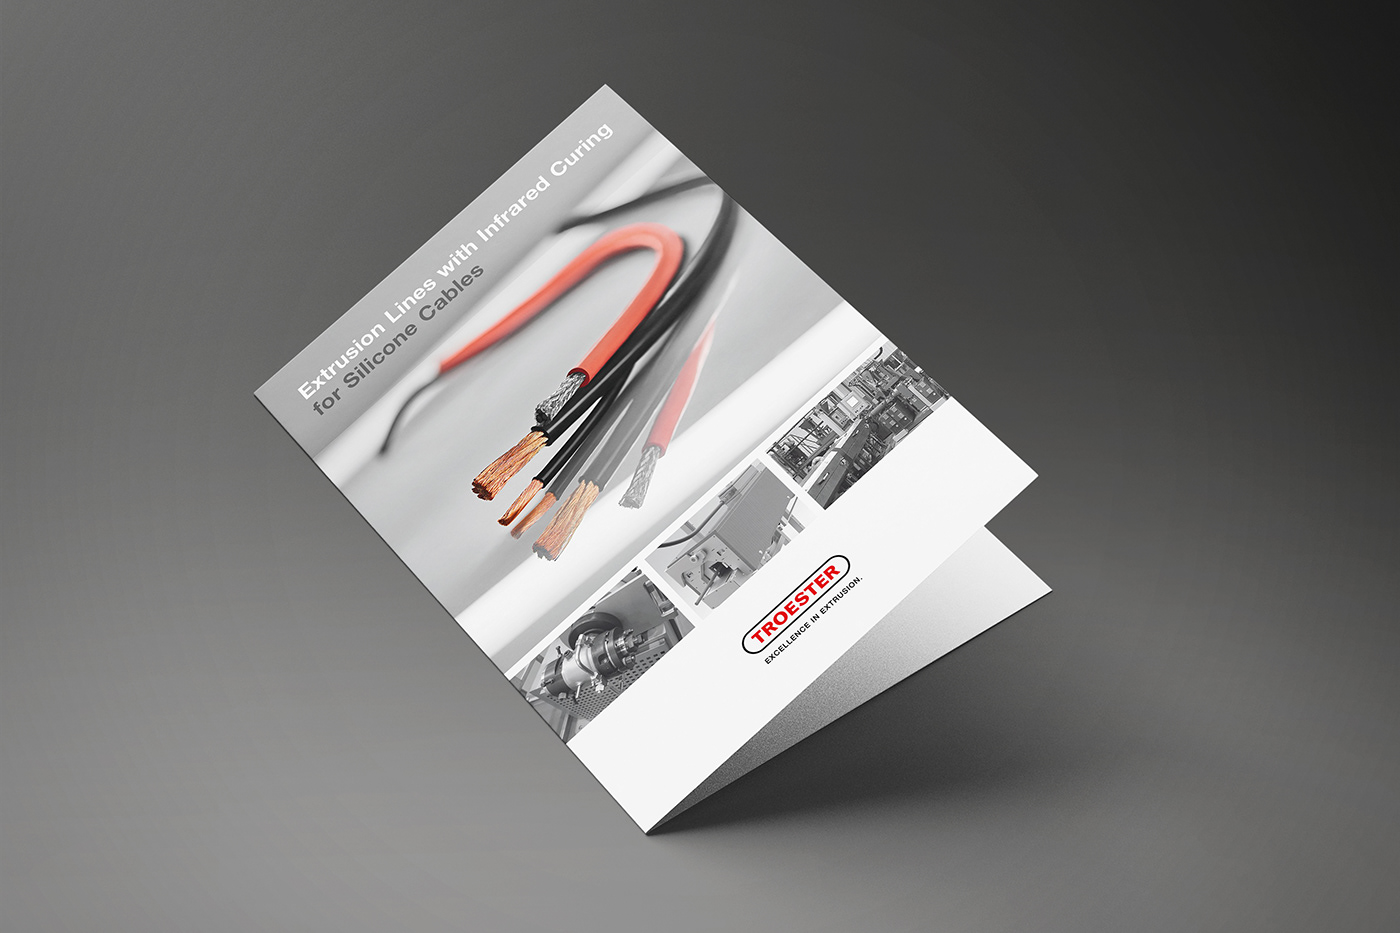 Branding design brochure Drucksachen editorial design  graphic design  print design  Product Photography rotherdesign technische kommunikation